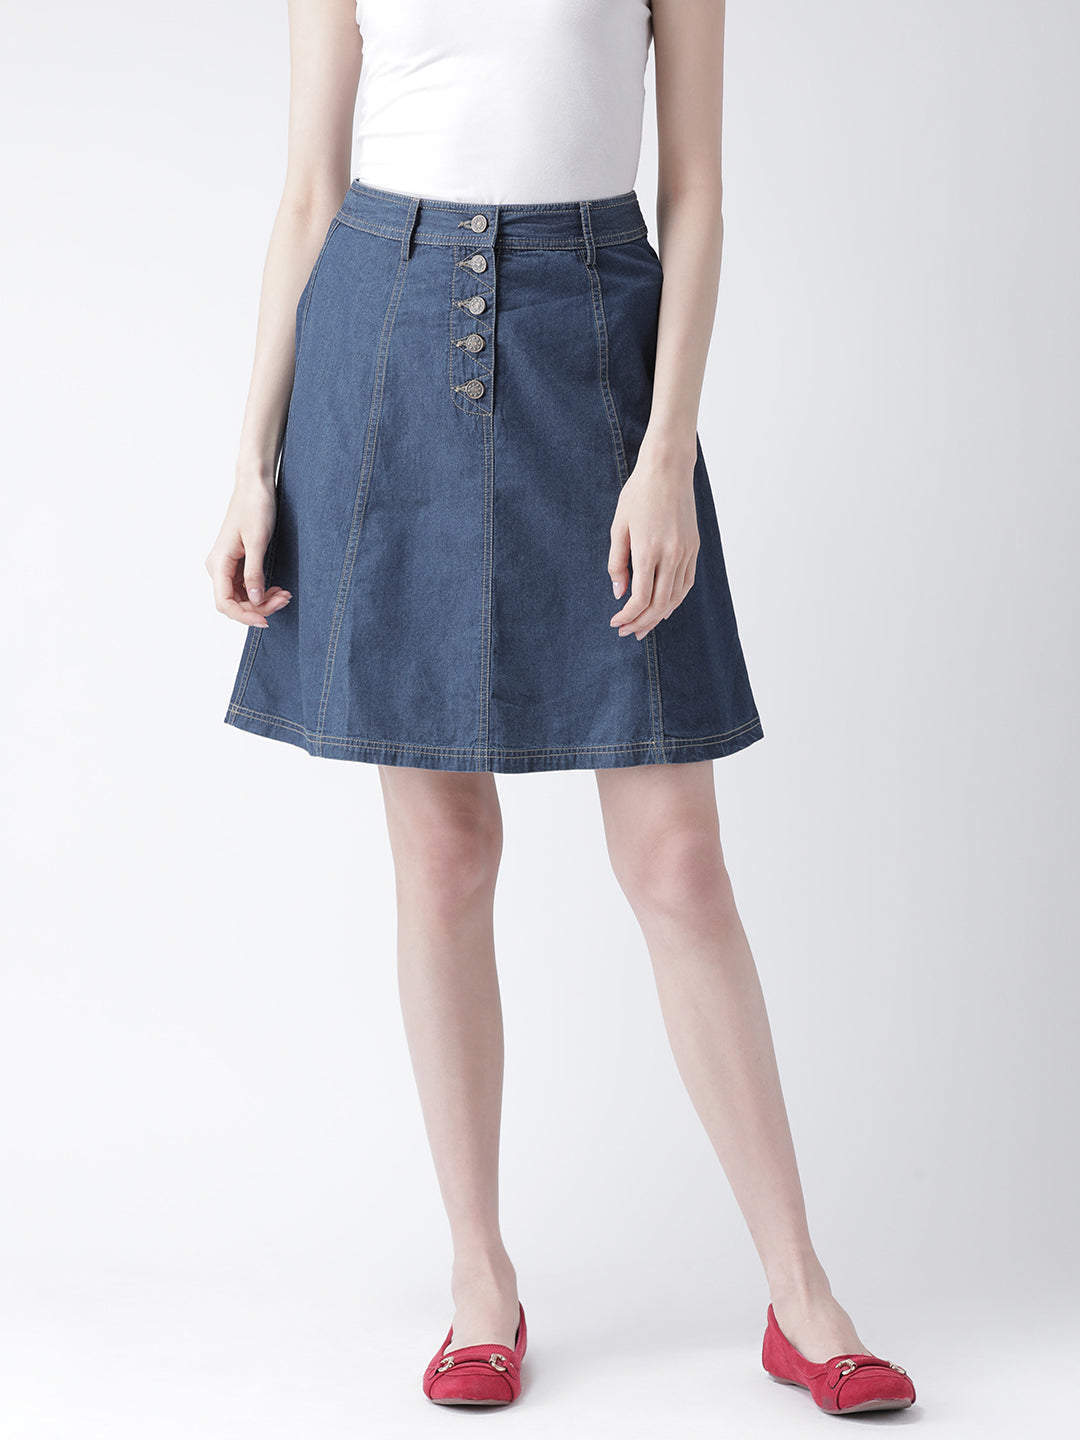 Blue A-Line Skirt